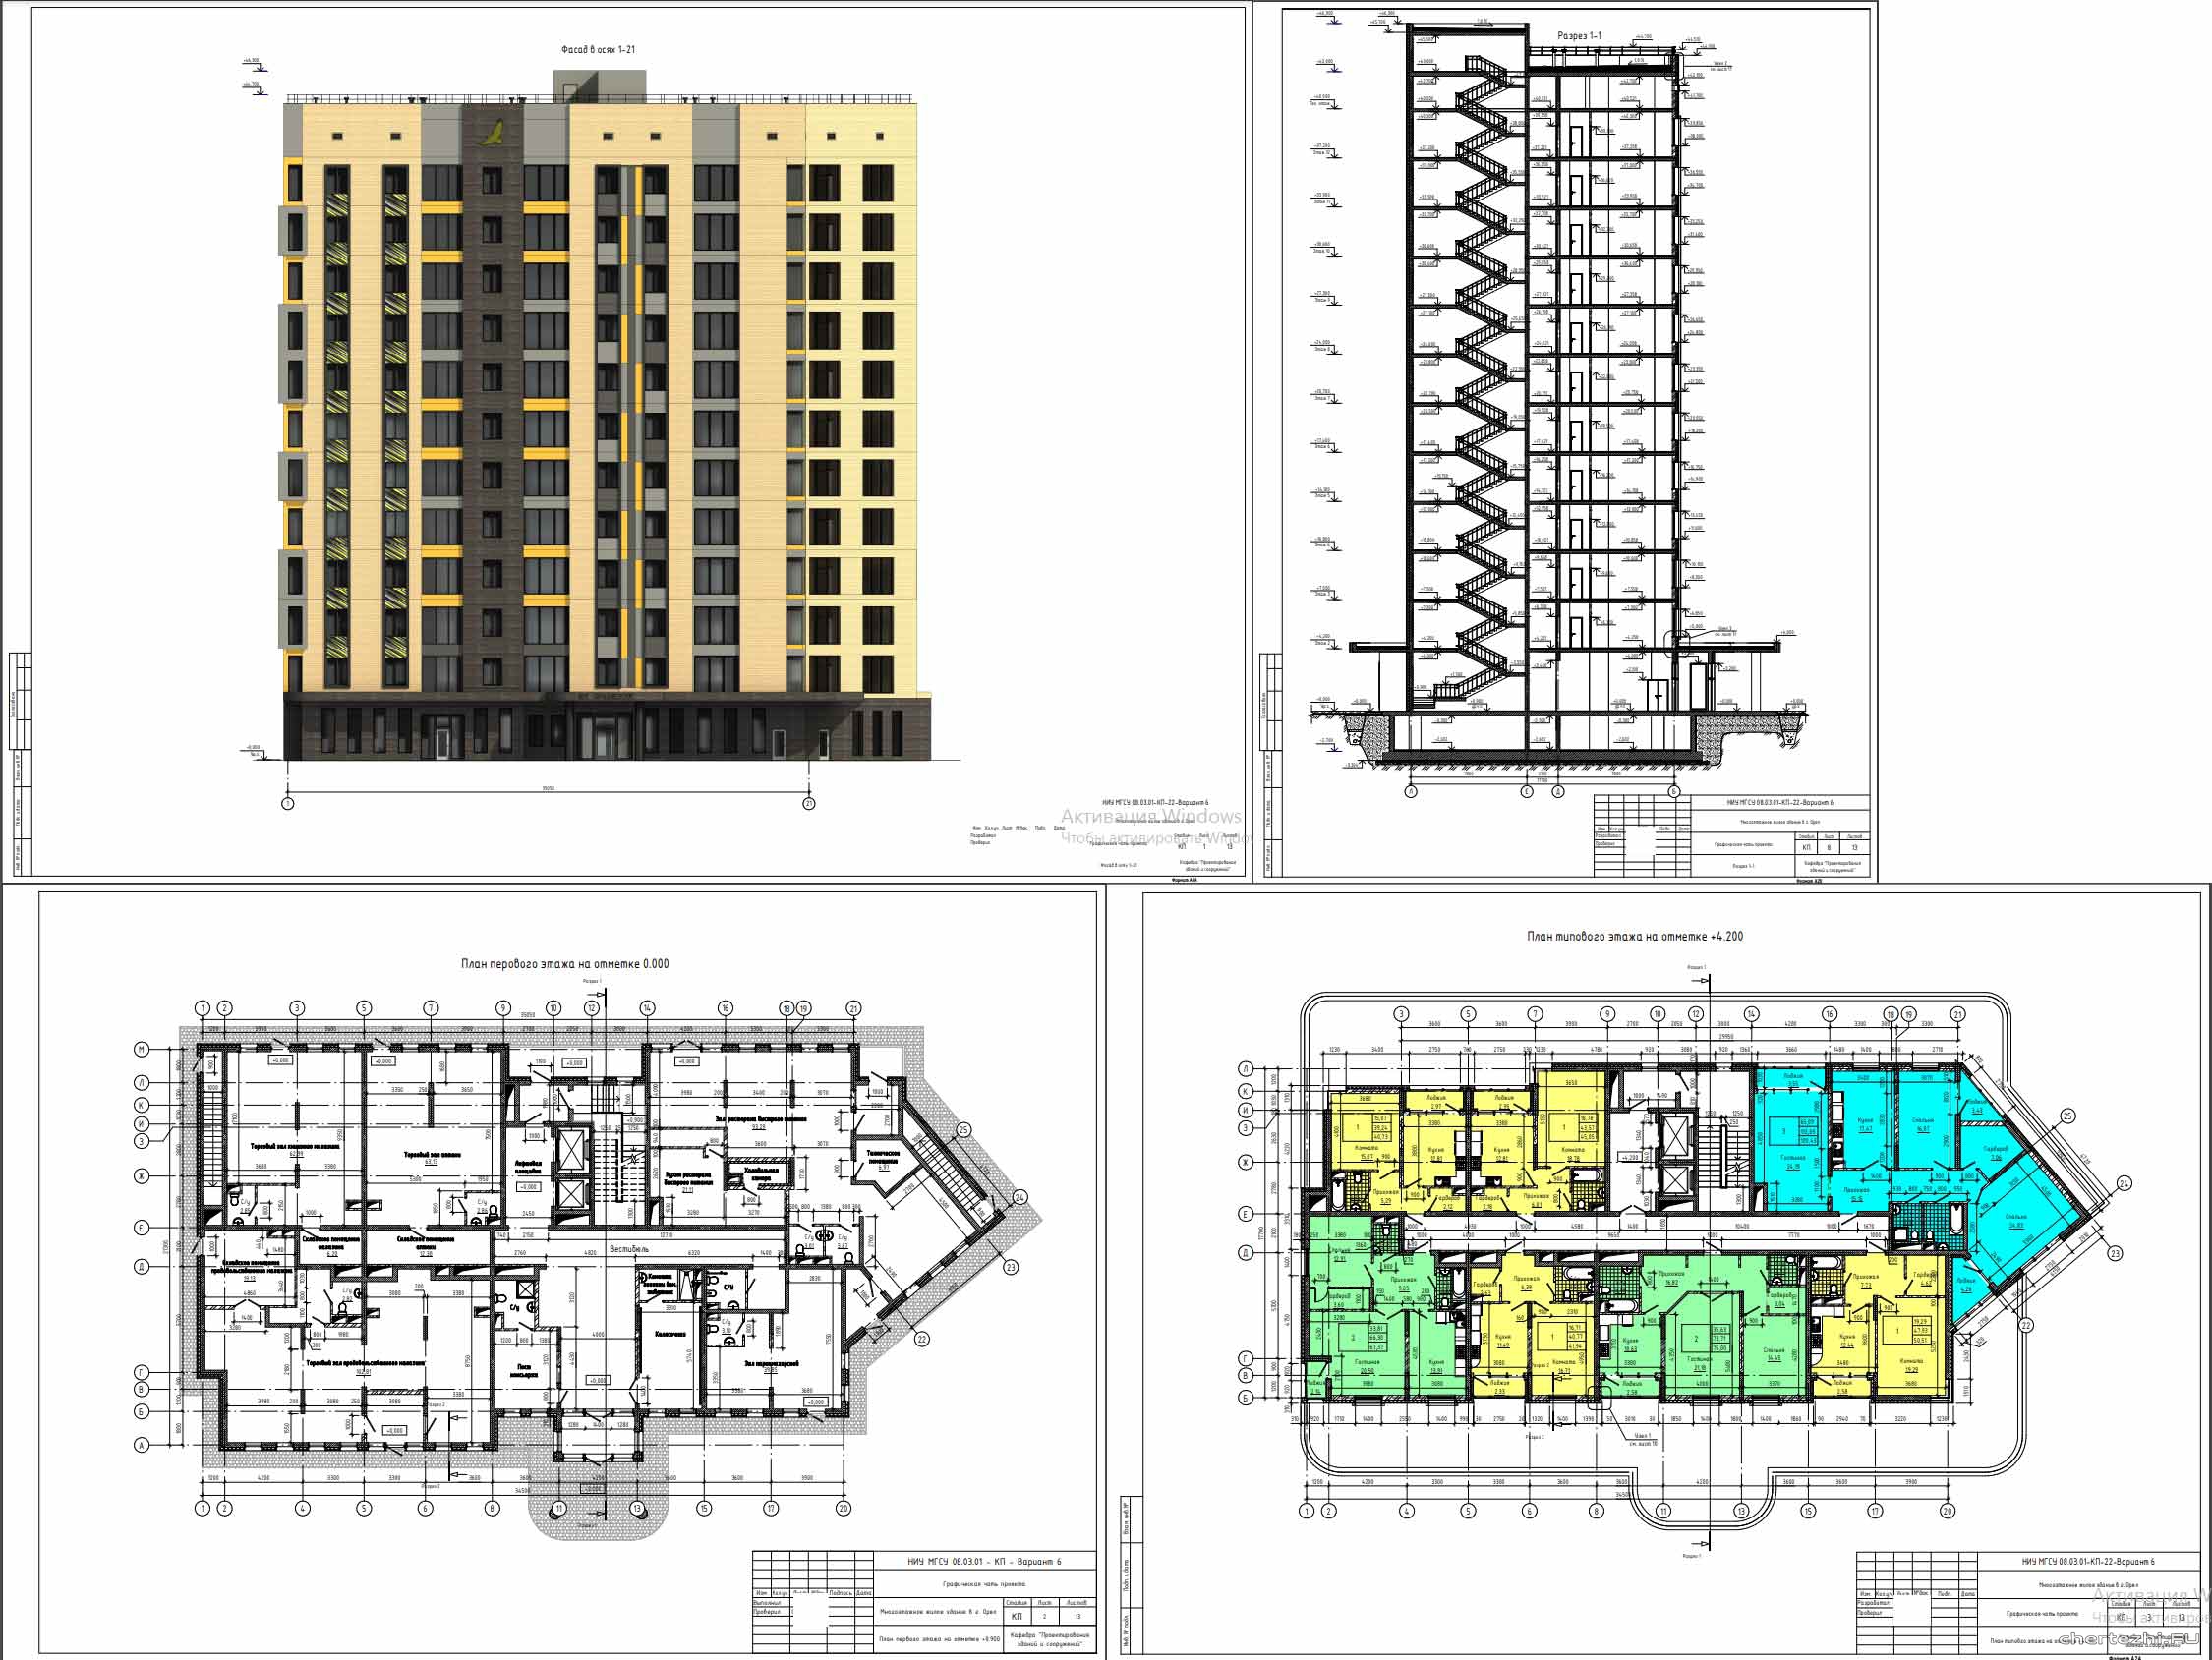 Курсовой проект - 12-ти этажное жилое здание 35,0 х 21,3 м в г. Орел